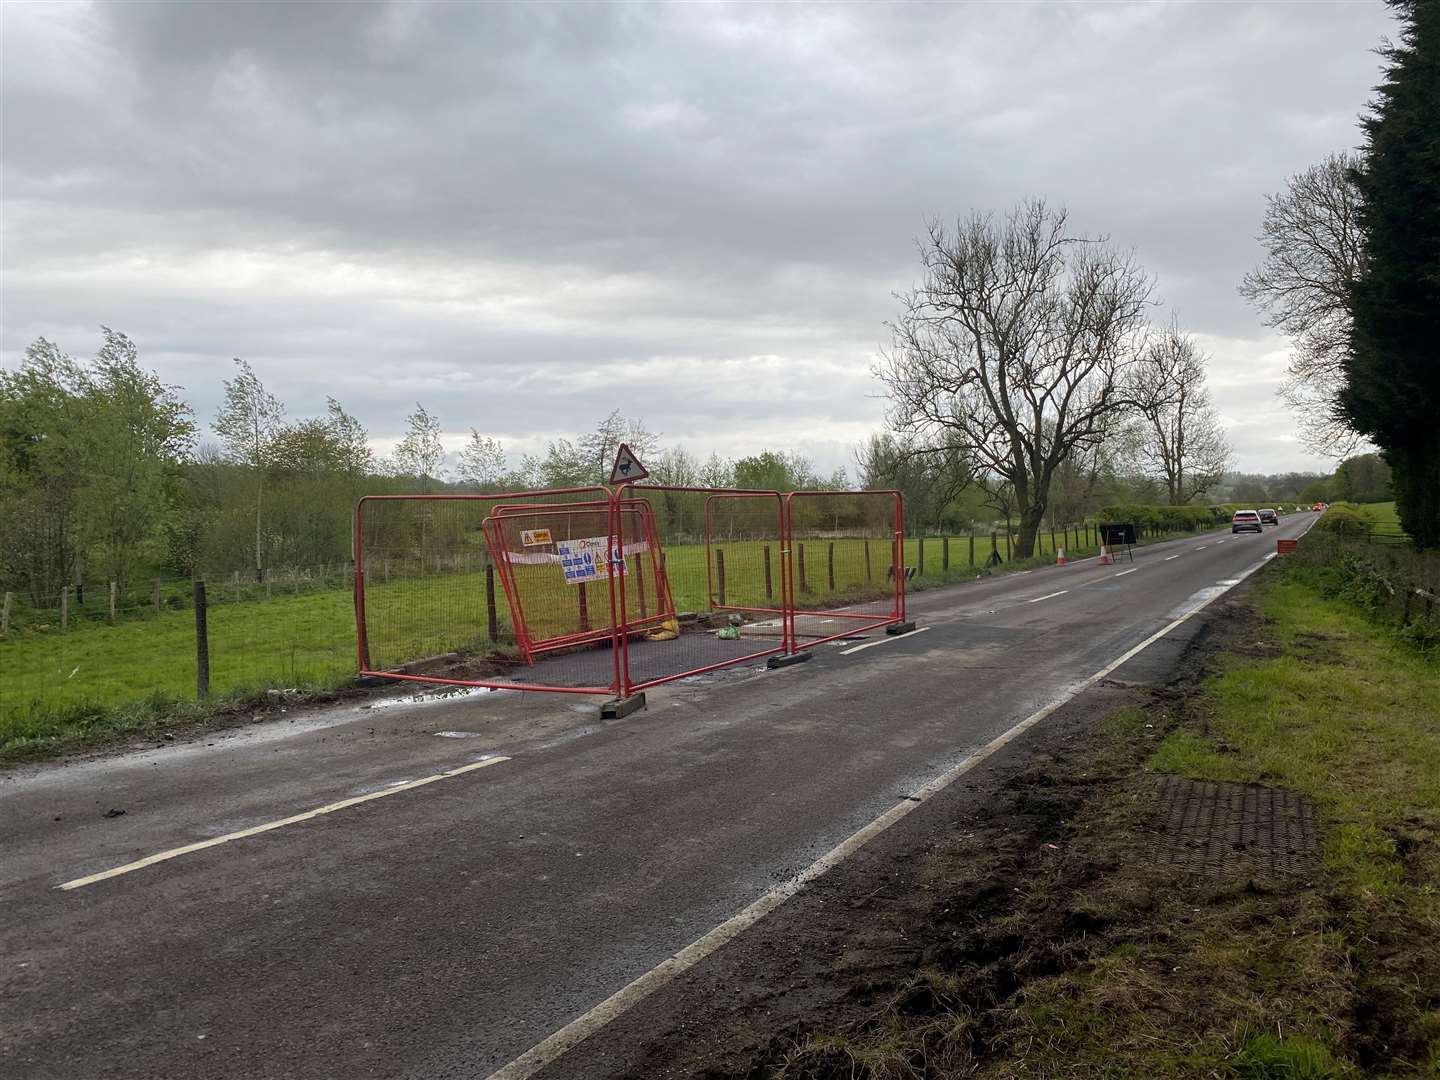 The A28 Ashford Road is shut again following a South East Water pipe repair near Godmersham